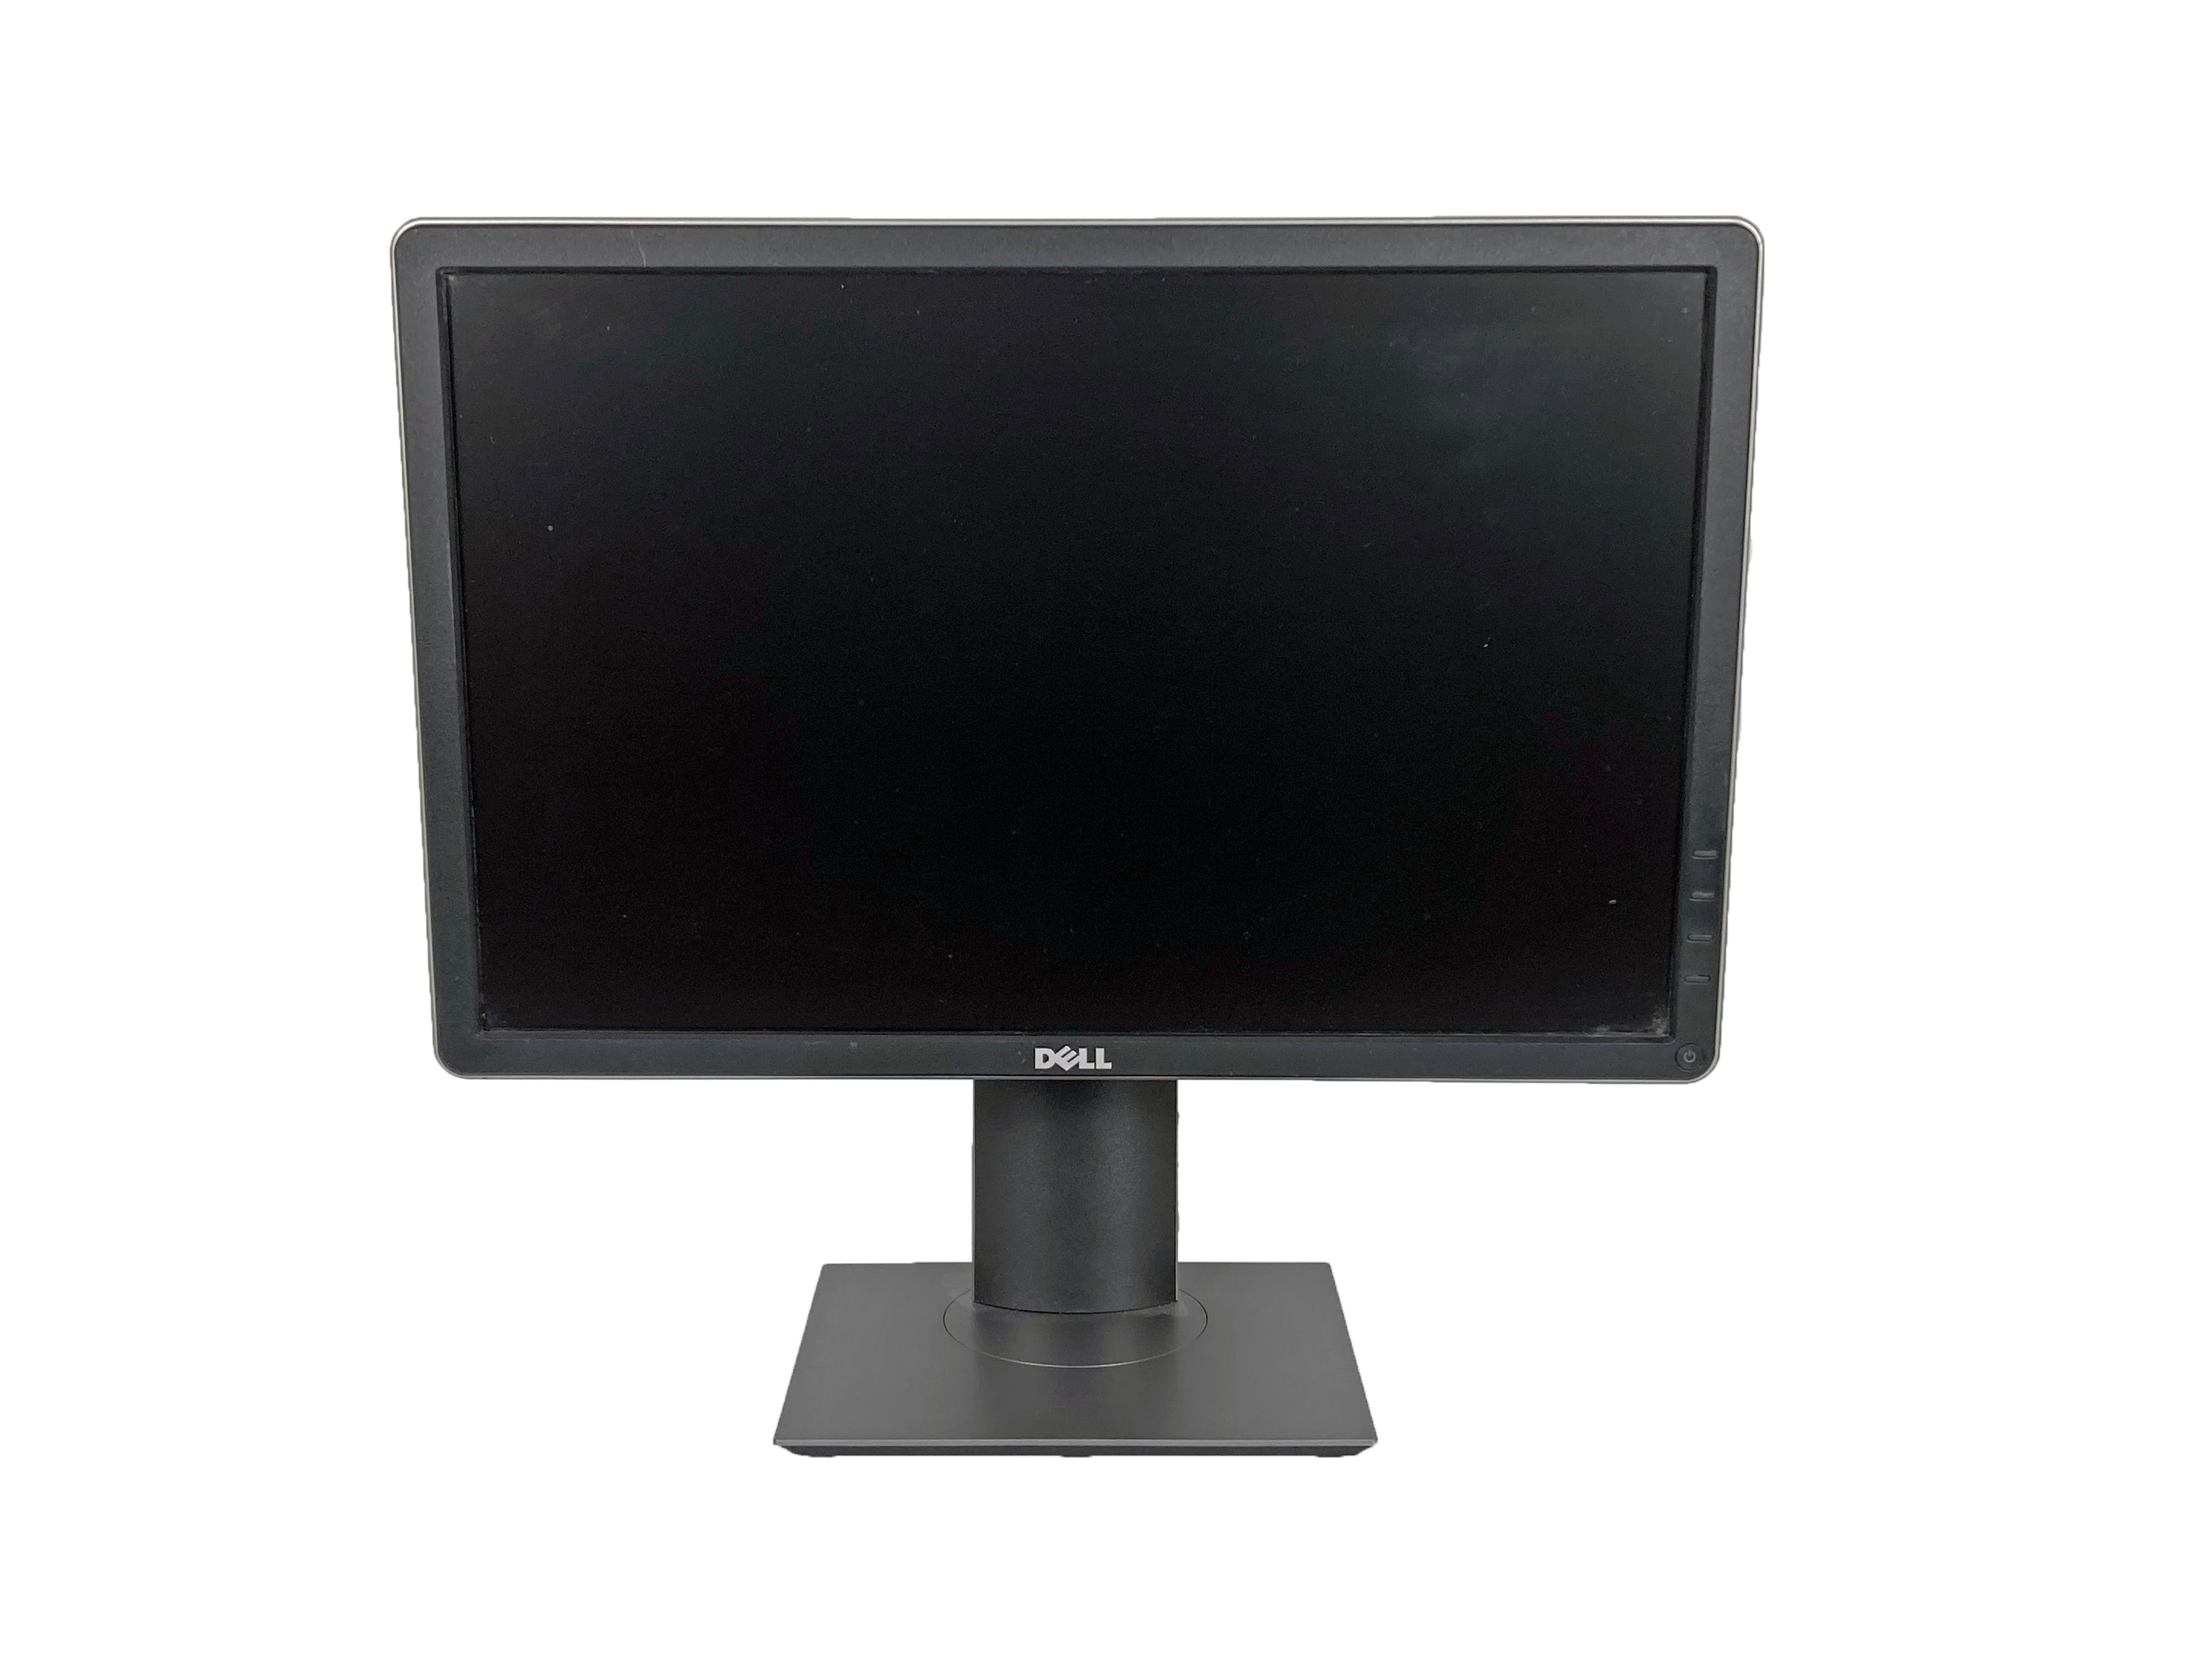 Dell P2016t 19.5" Widescreen LCD Monitor